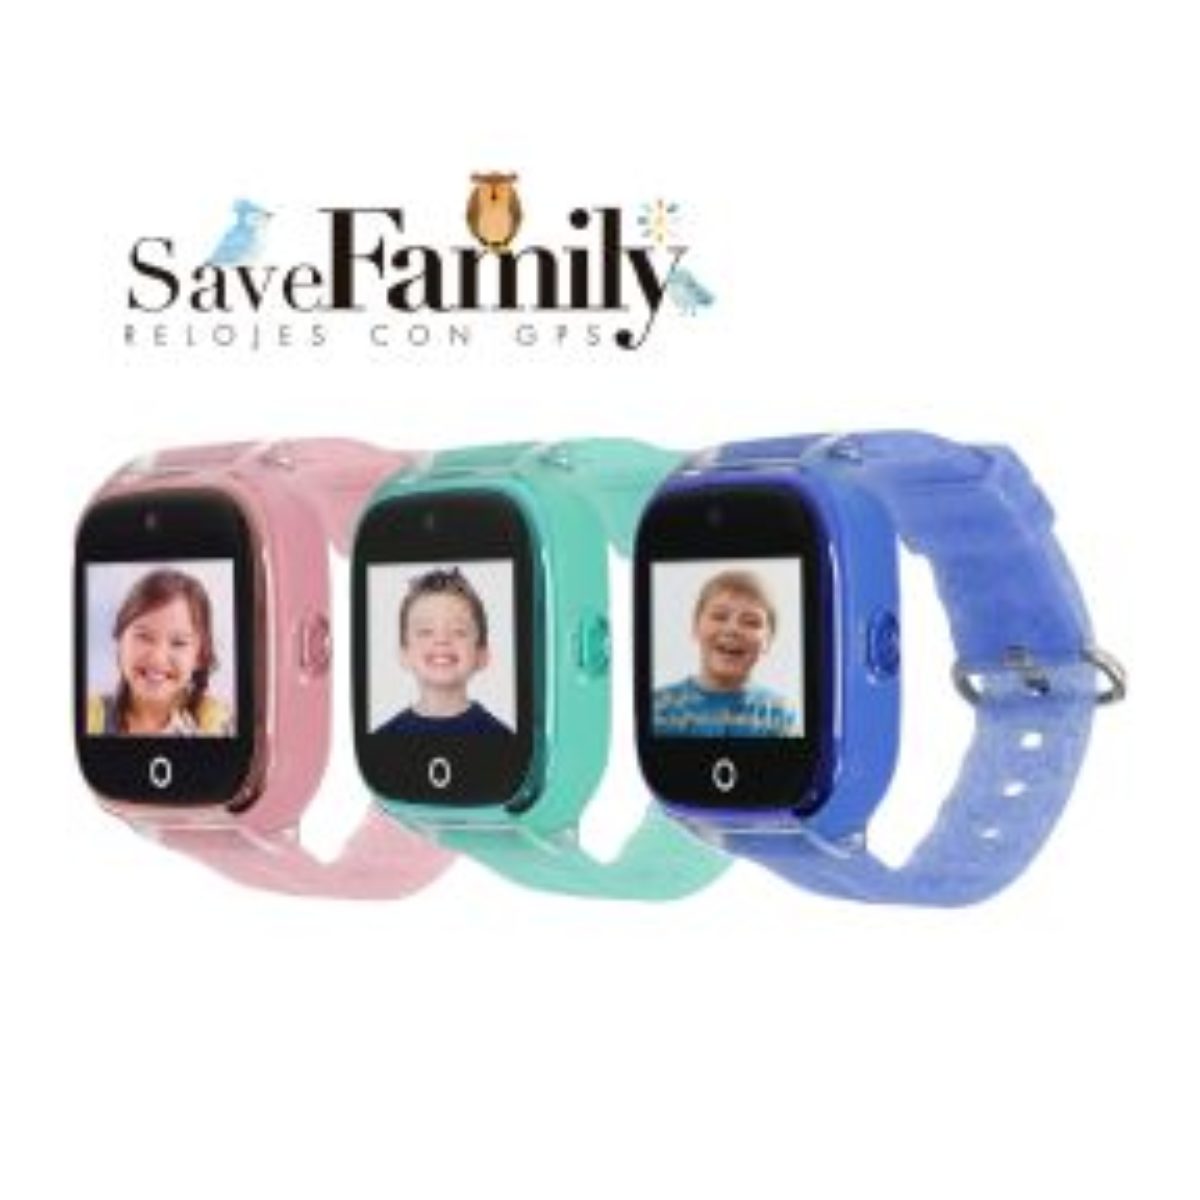 Reloj con GPS Save Family Azul » Joyería Relojería Paraíso